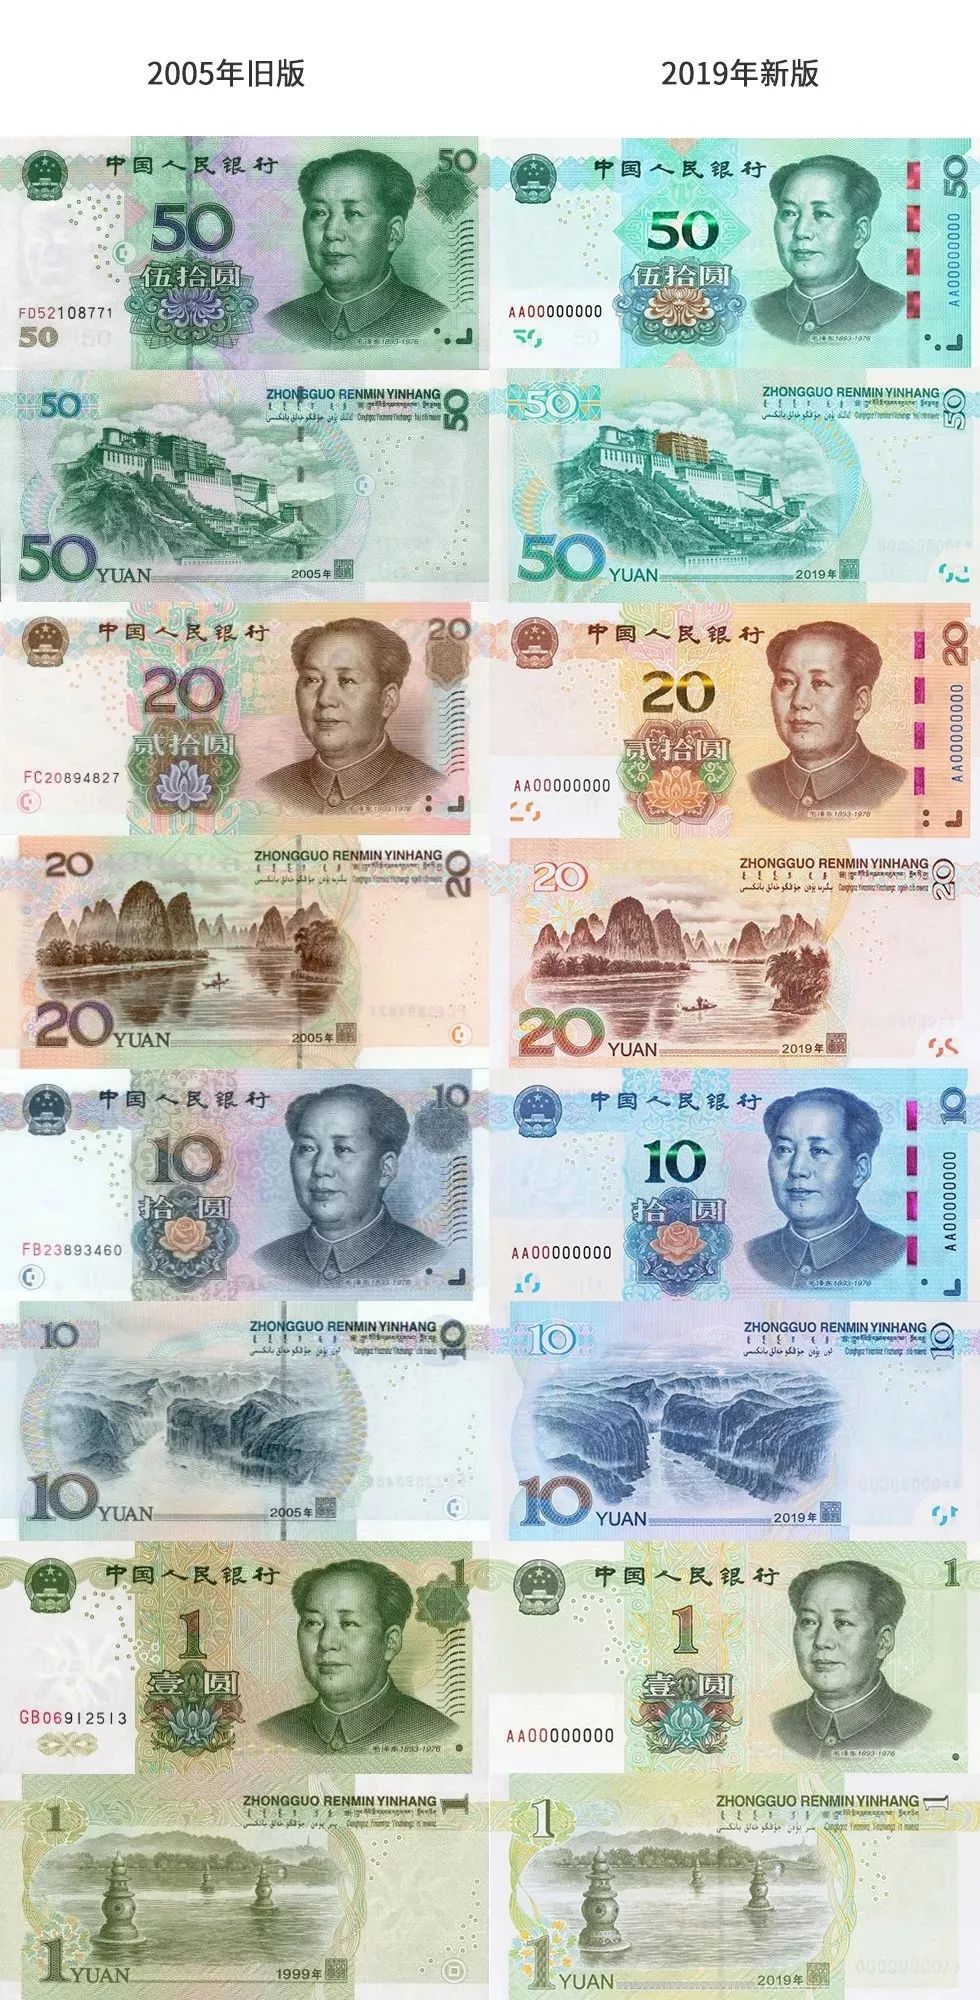 这可是中国人民银行官宣 2019年8月30日要发行的新版人民币!